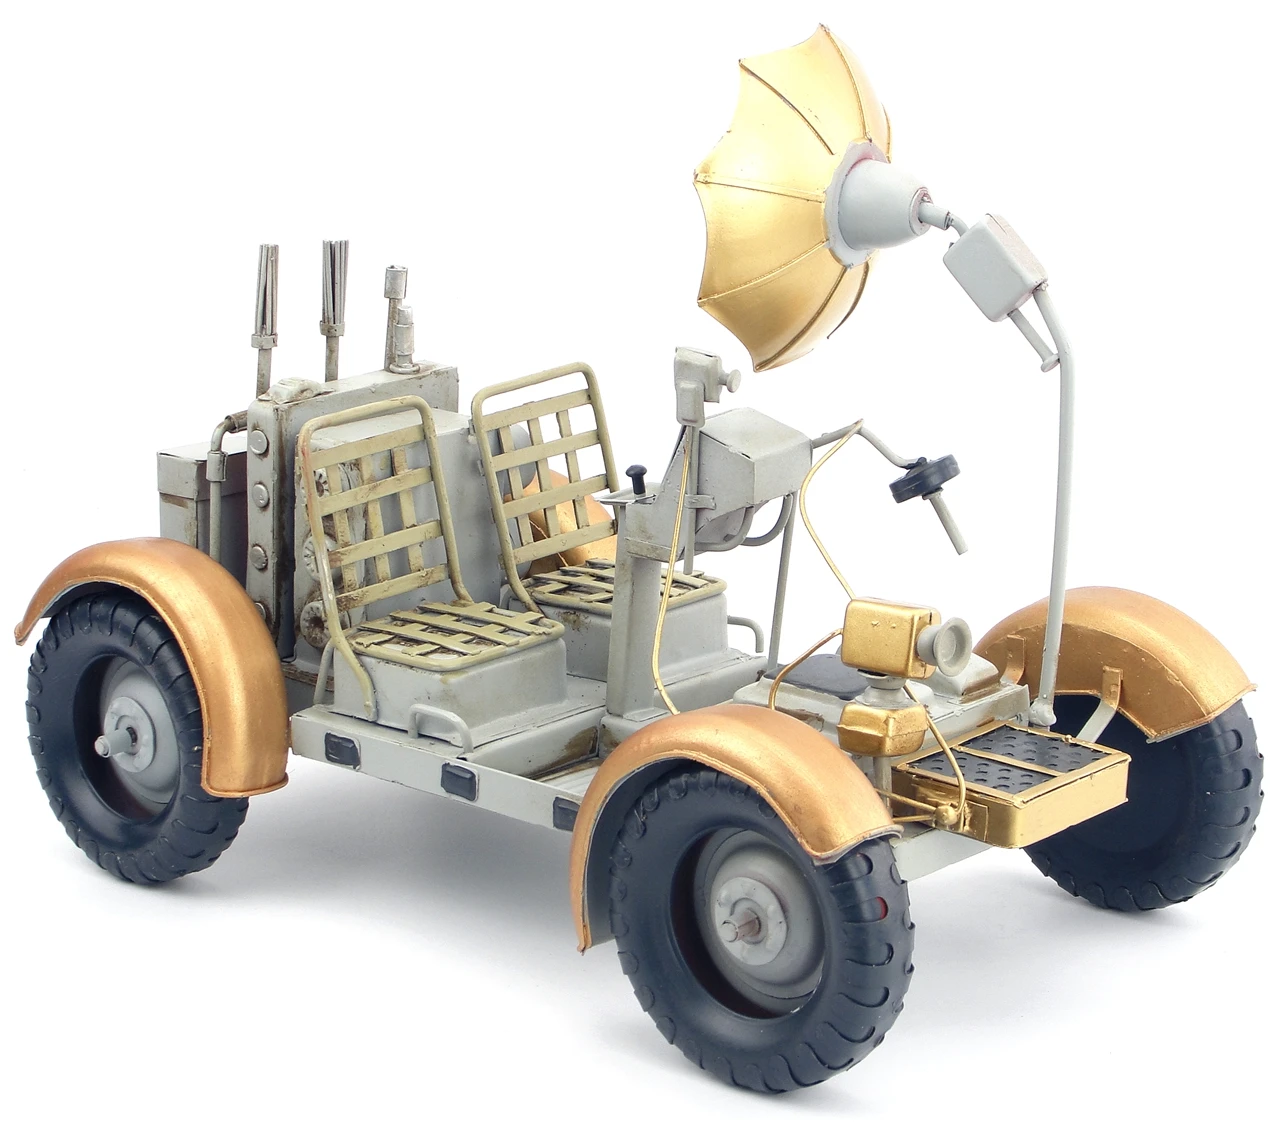 Антикварные ручные Сварные Железные украшения исследования на lunar rover Модель ретро железа ремесла